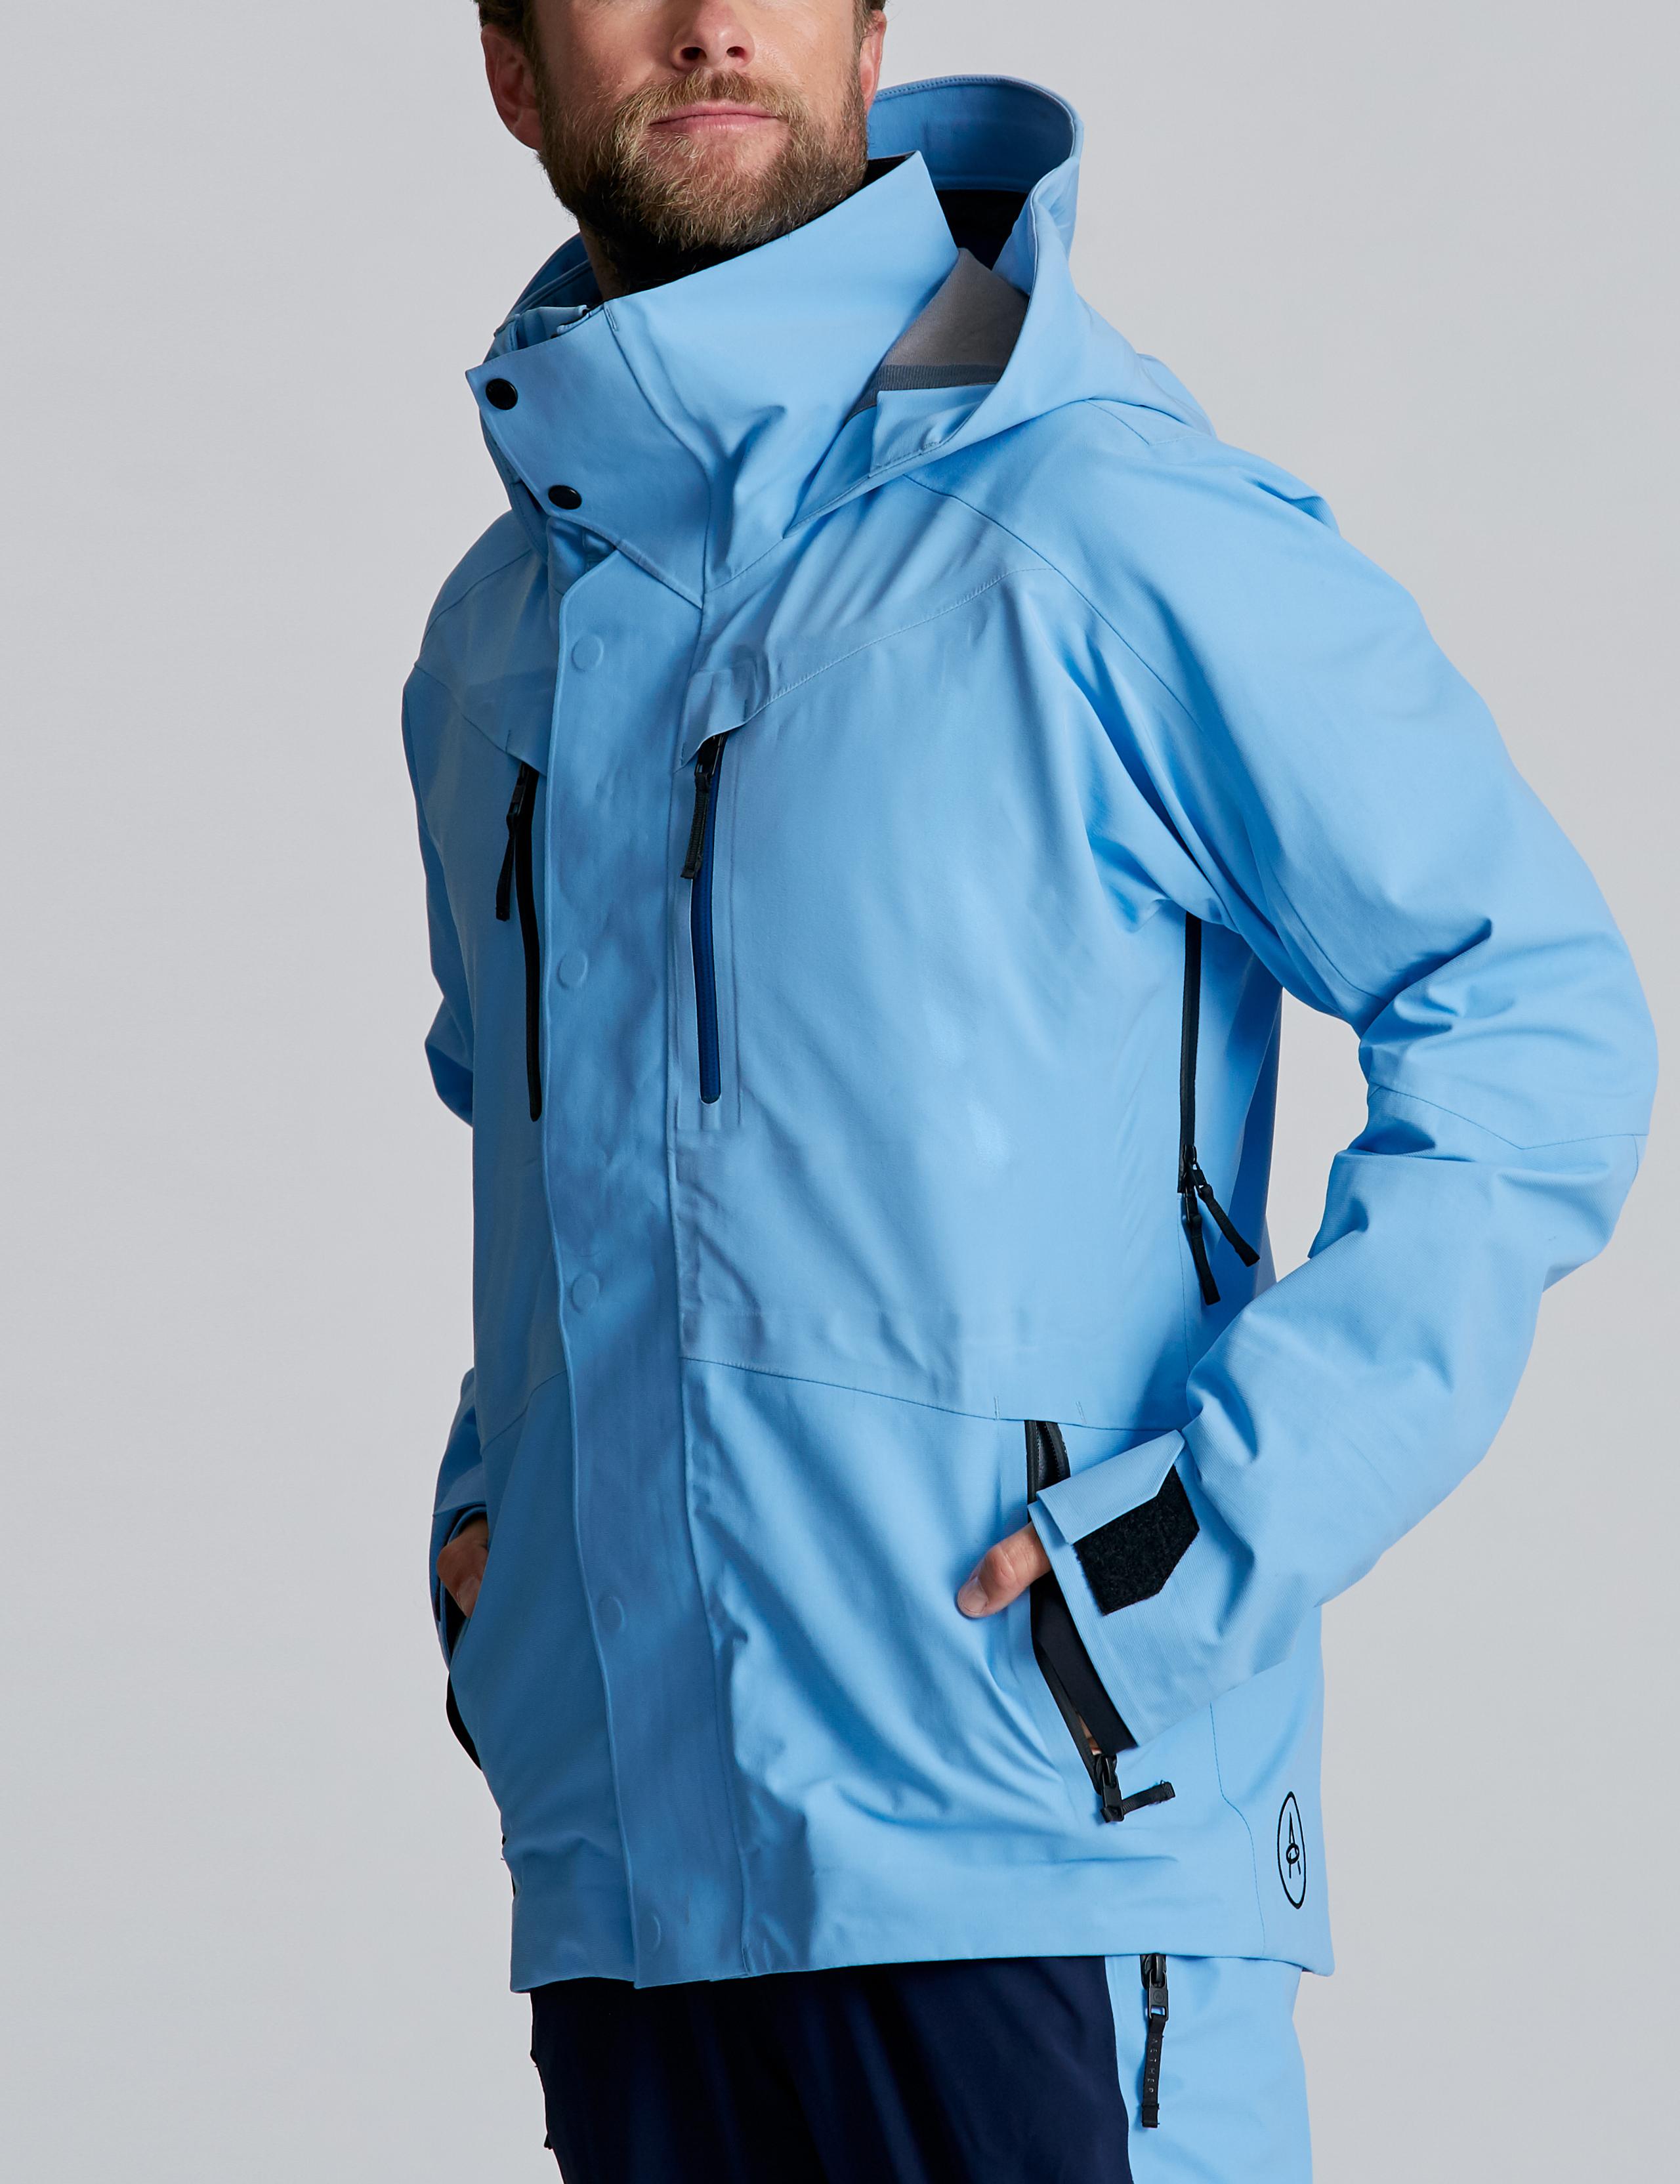 Man wearing Stealth Snow Jacket in Atlas Blue in studio